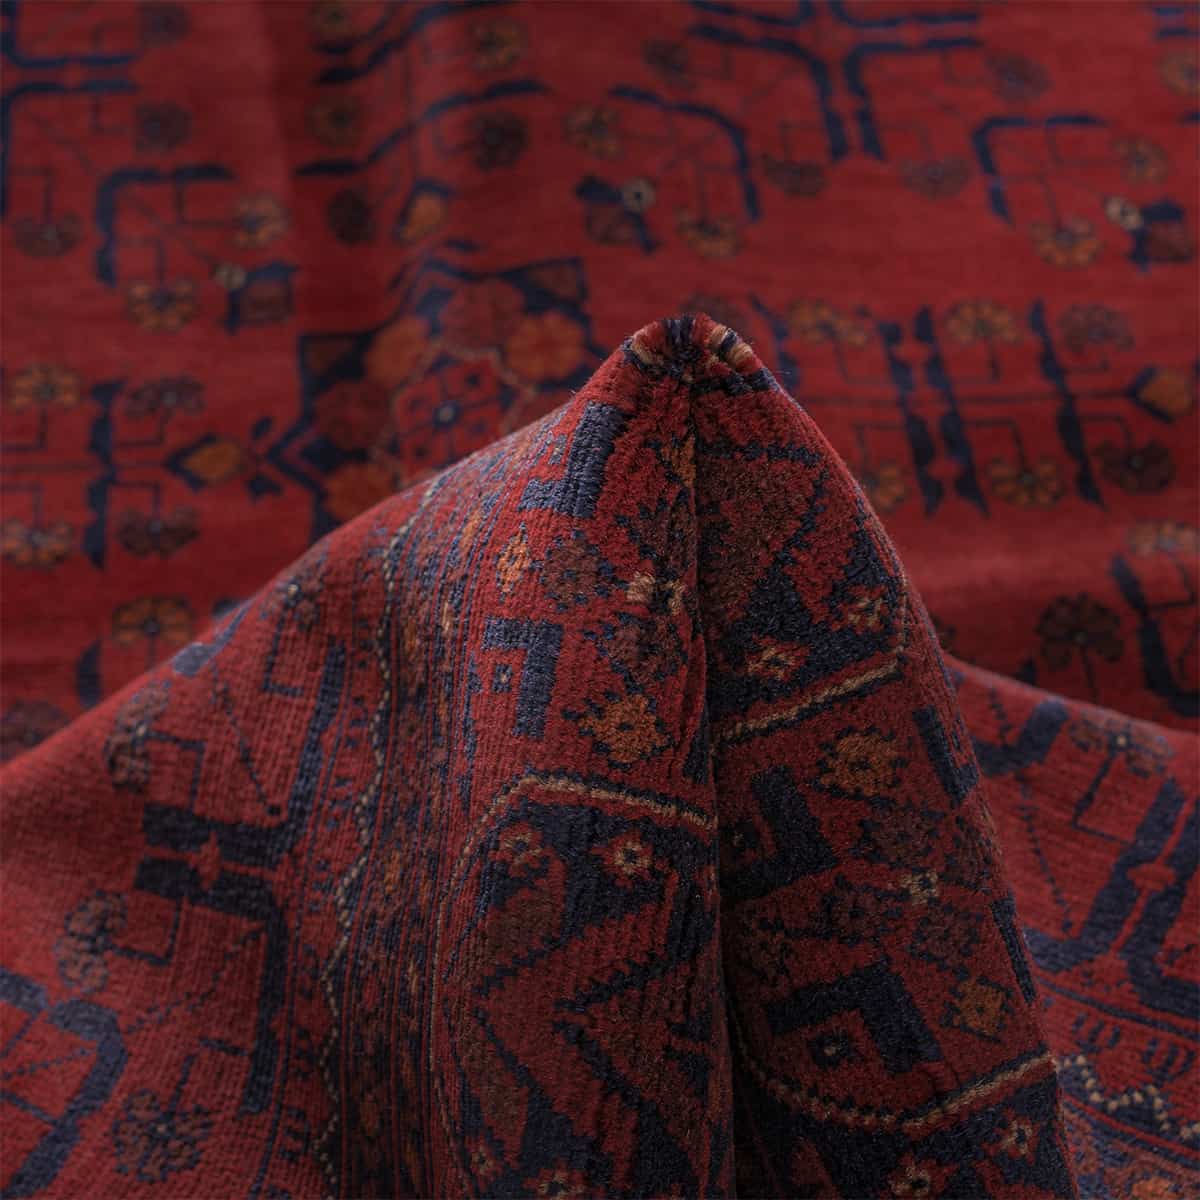  סופר חל ממדי בלג'יק 00 אדום 176x236 | השטיח האדום 